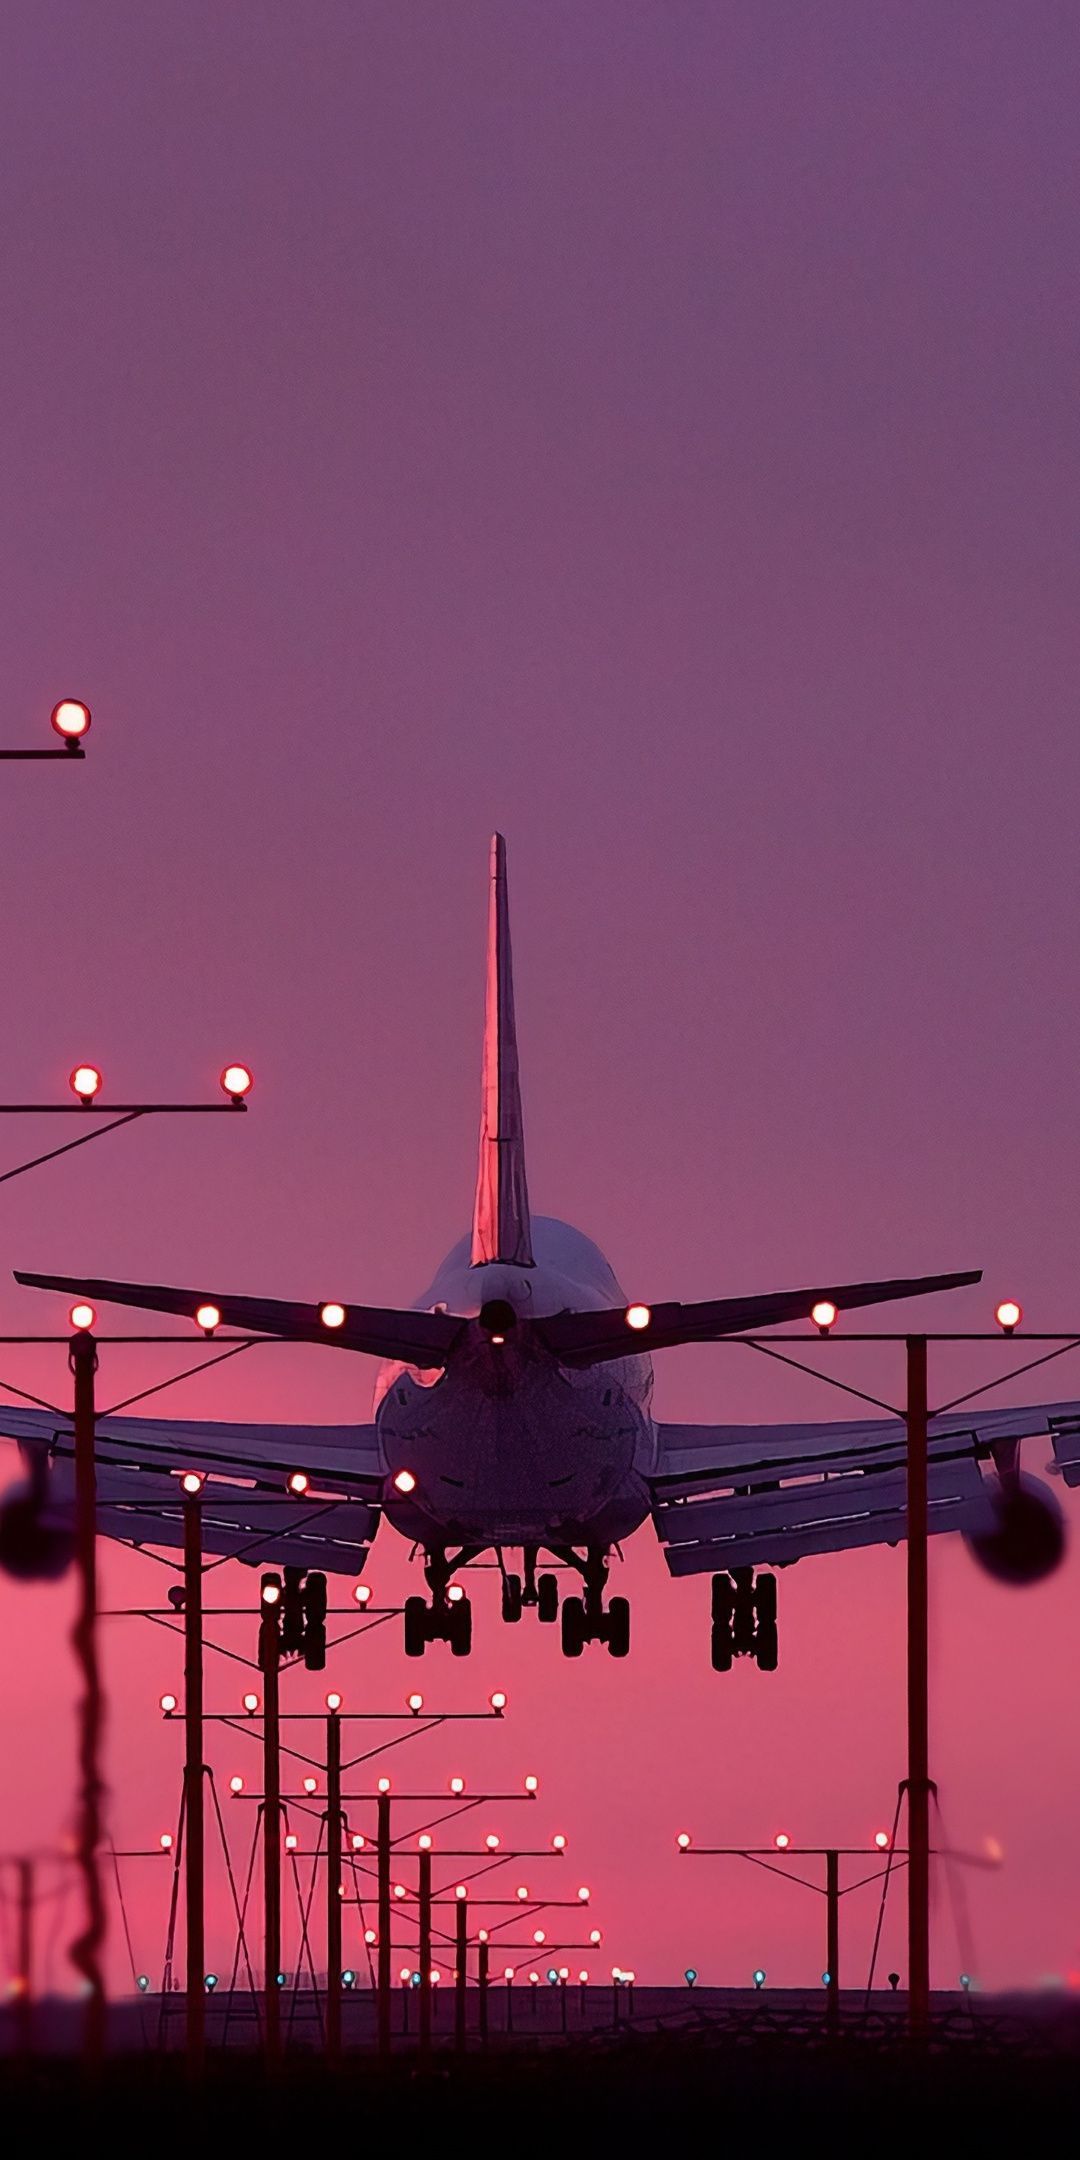 Aircraft, landing, sunset, 1080x2160 wallpaper. Airplane